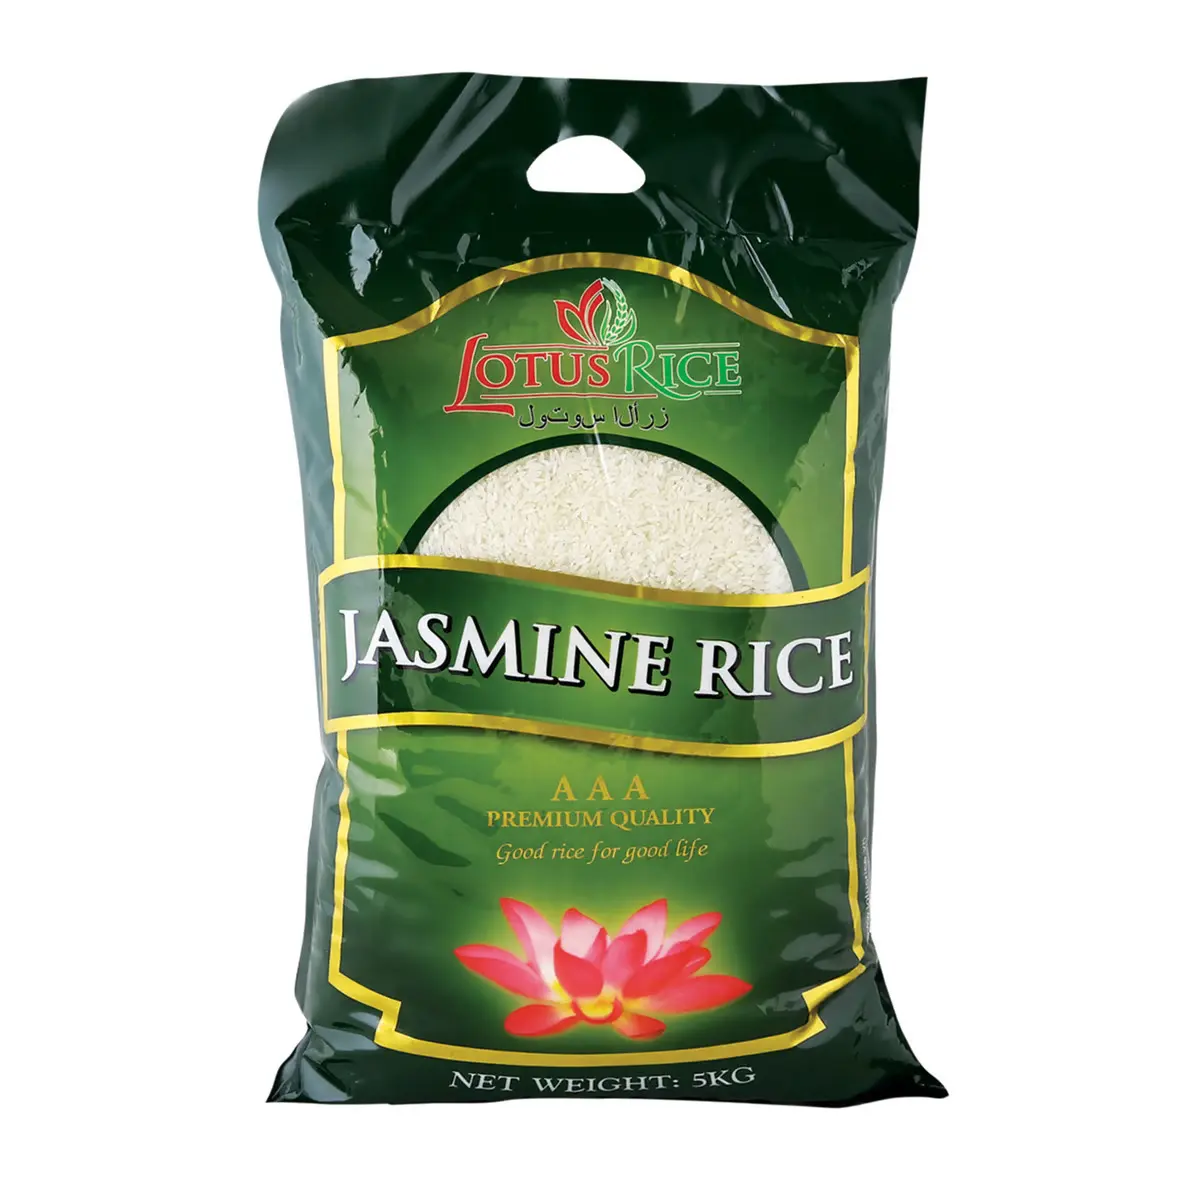 Vietnam esi scher Jasmin reis-Hochwertiger duftender Reis-Starker Parfüm-Lotus reis (WhatsApp: 84865381935)